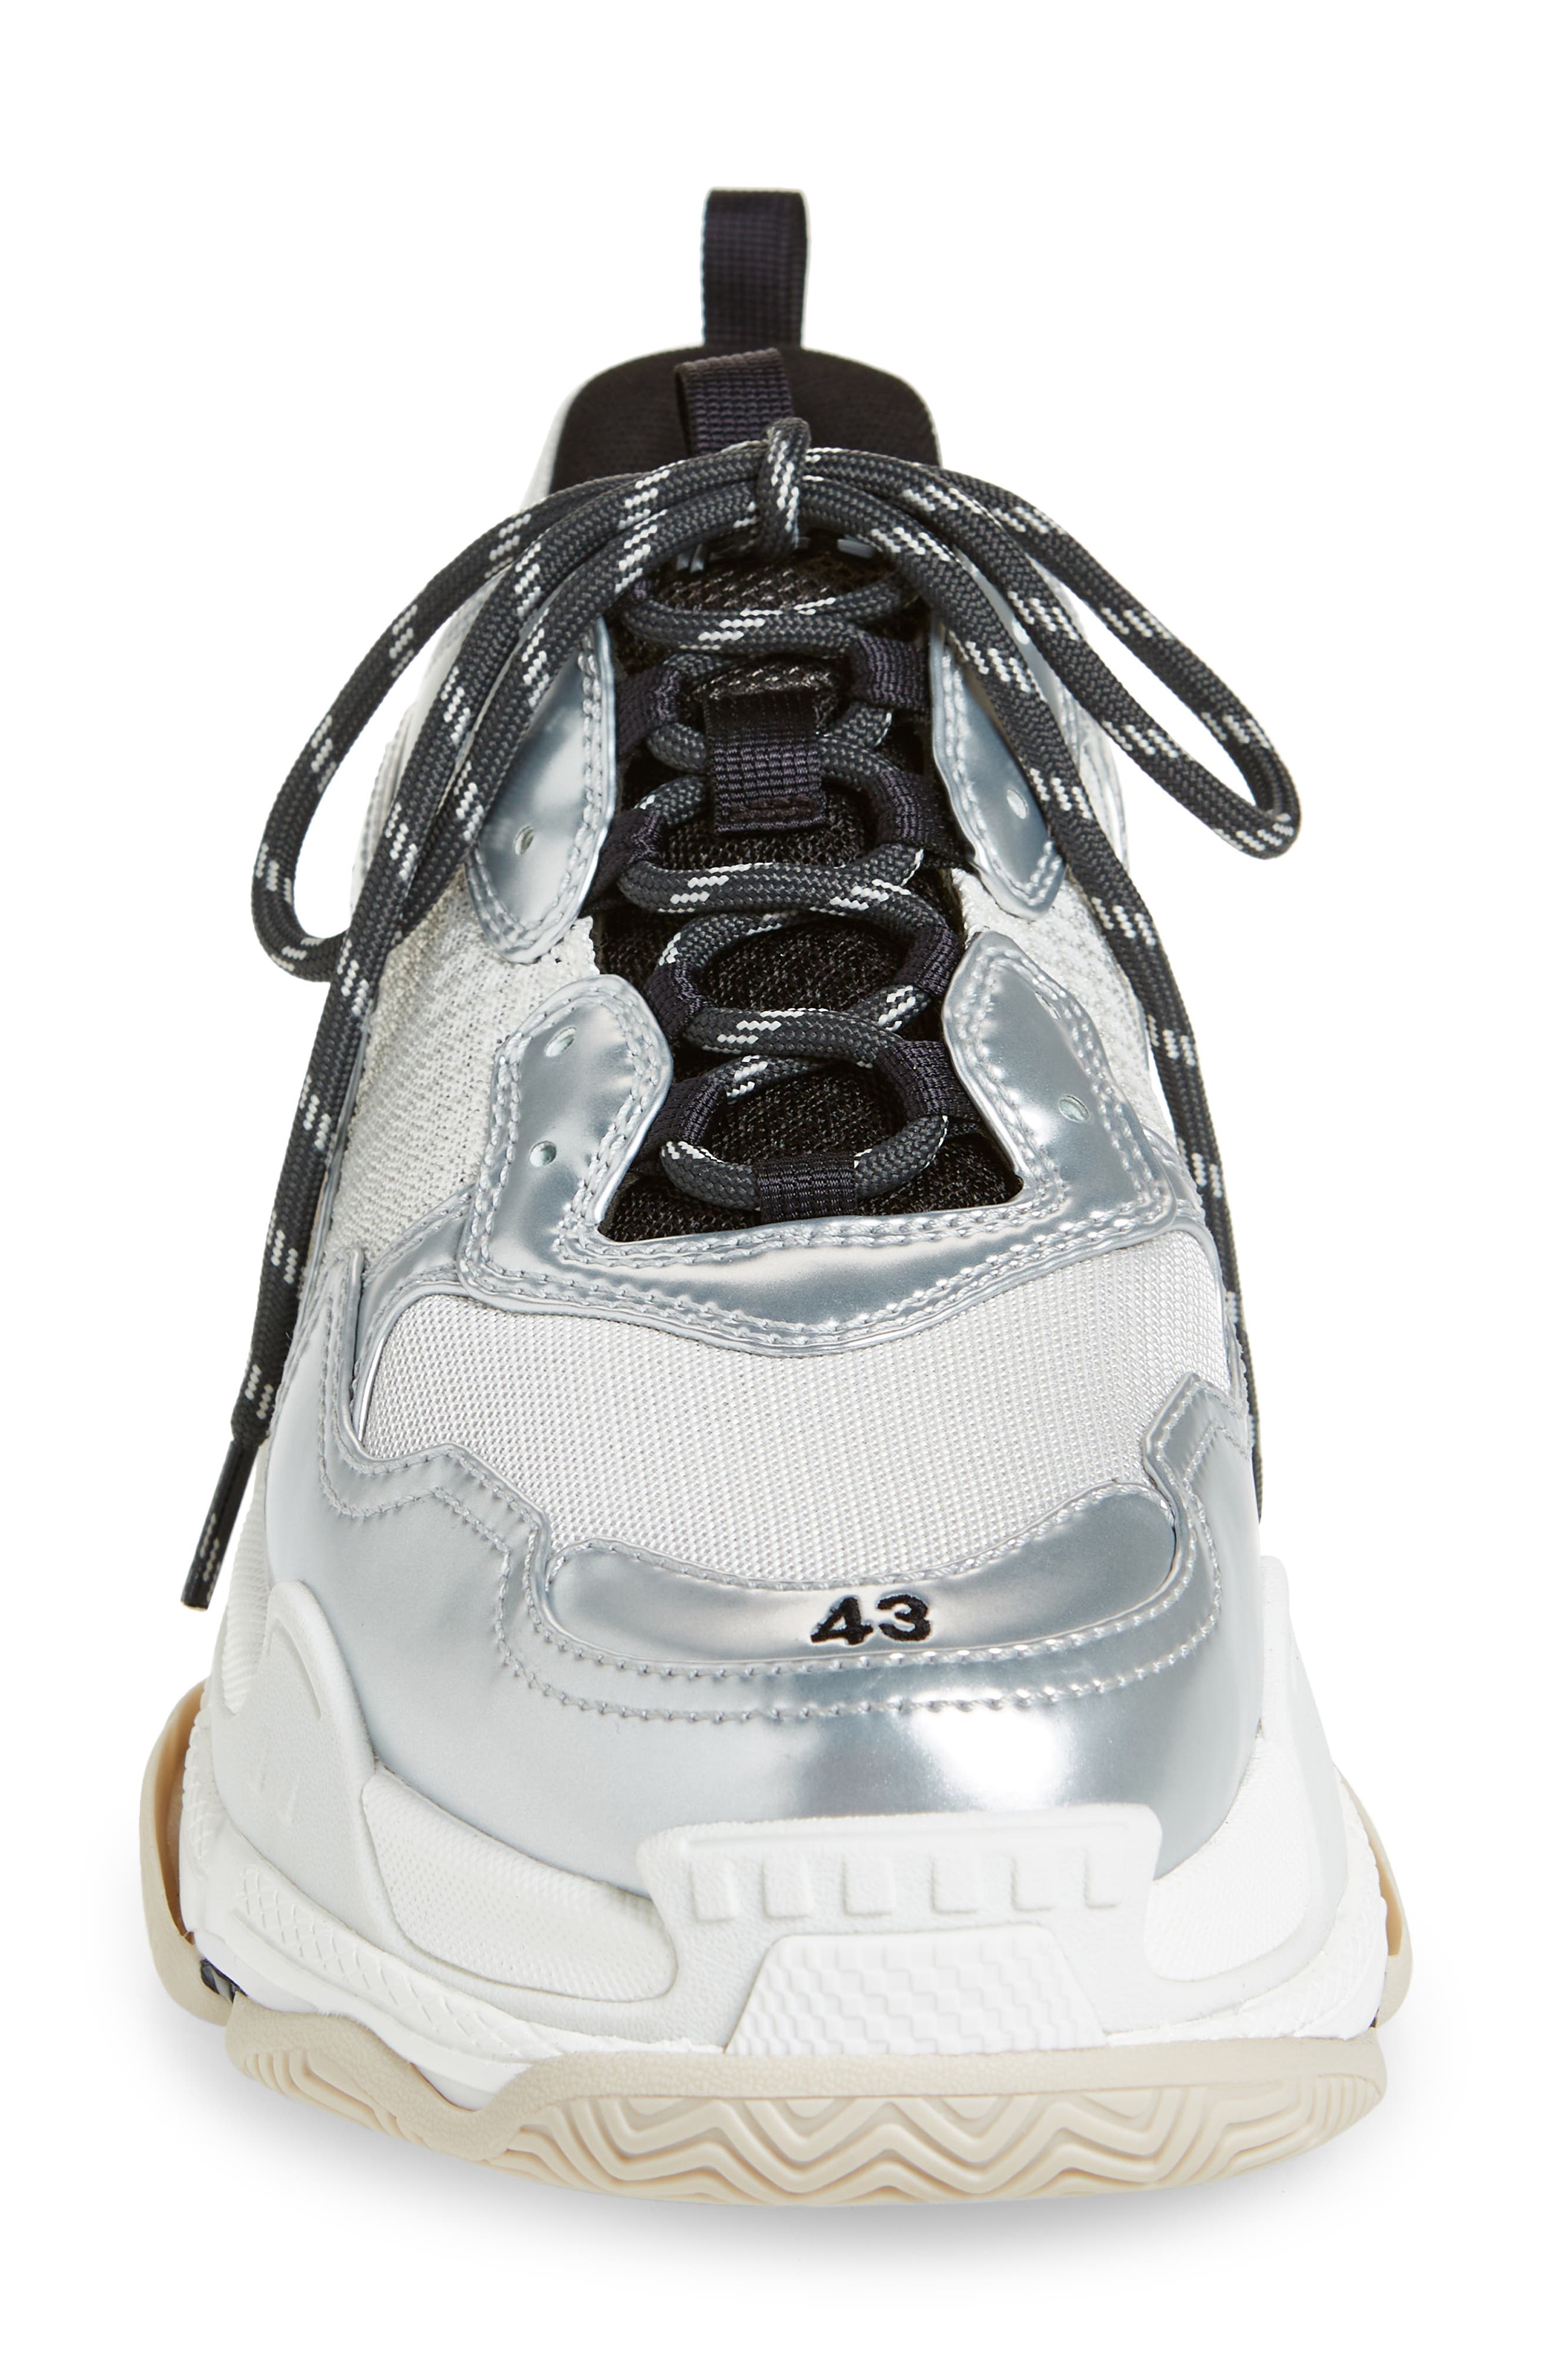 Balenciaga Triple S Sneaker in Black/White/Silver | Smart Closet